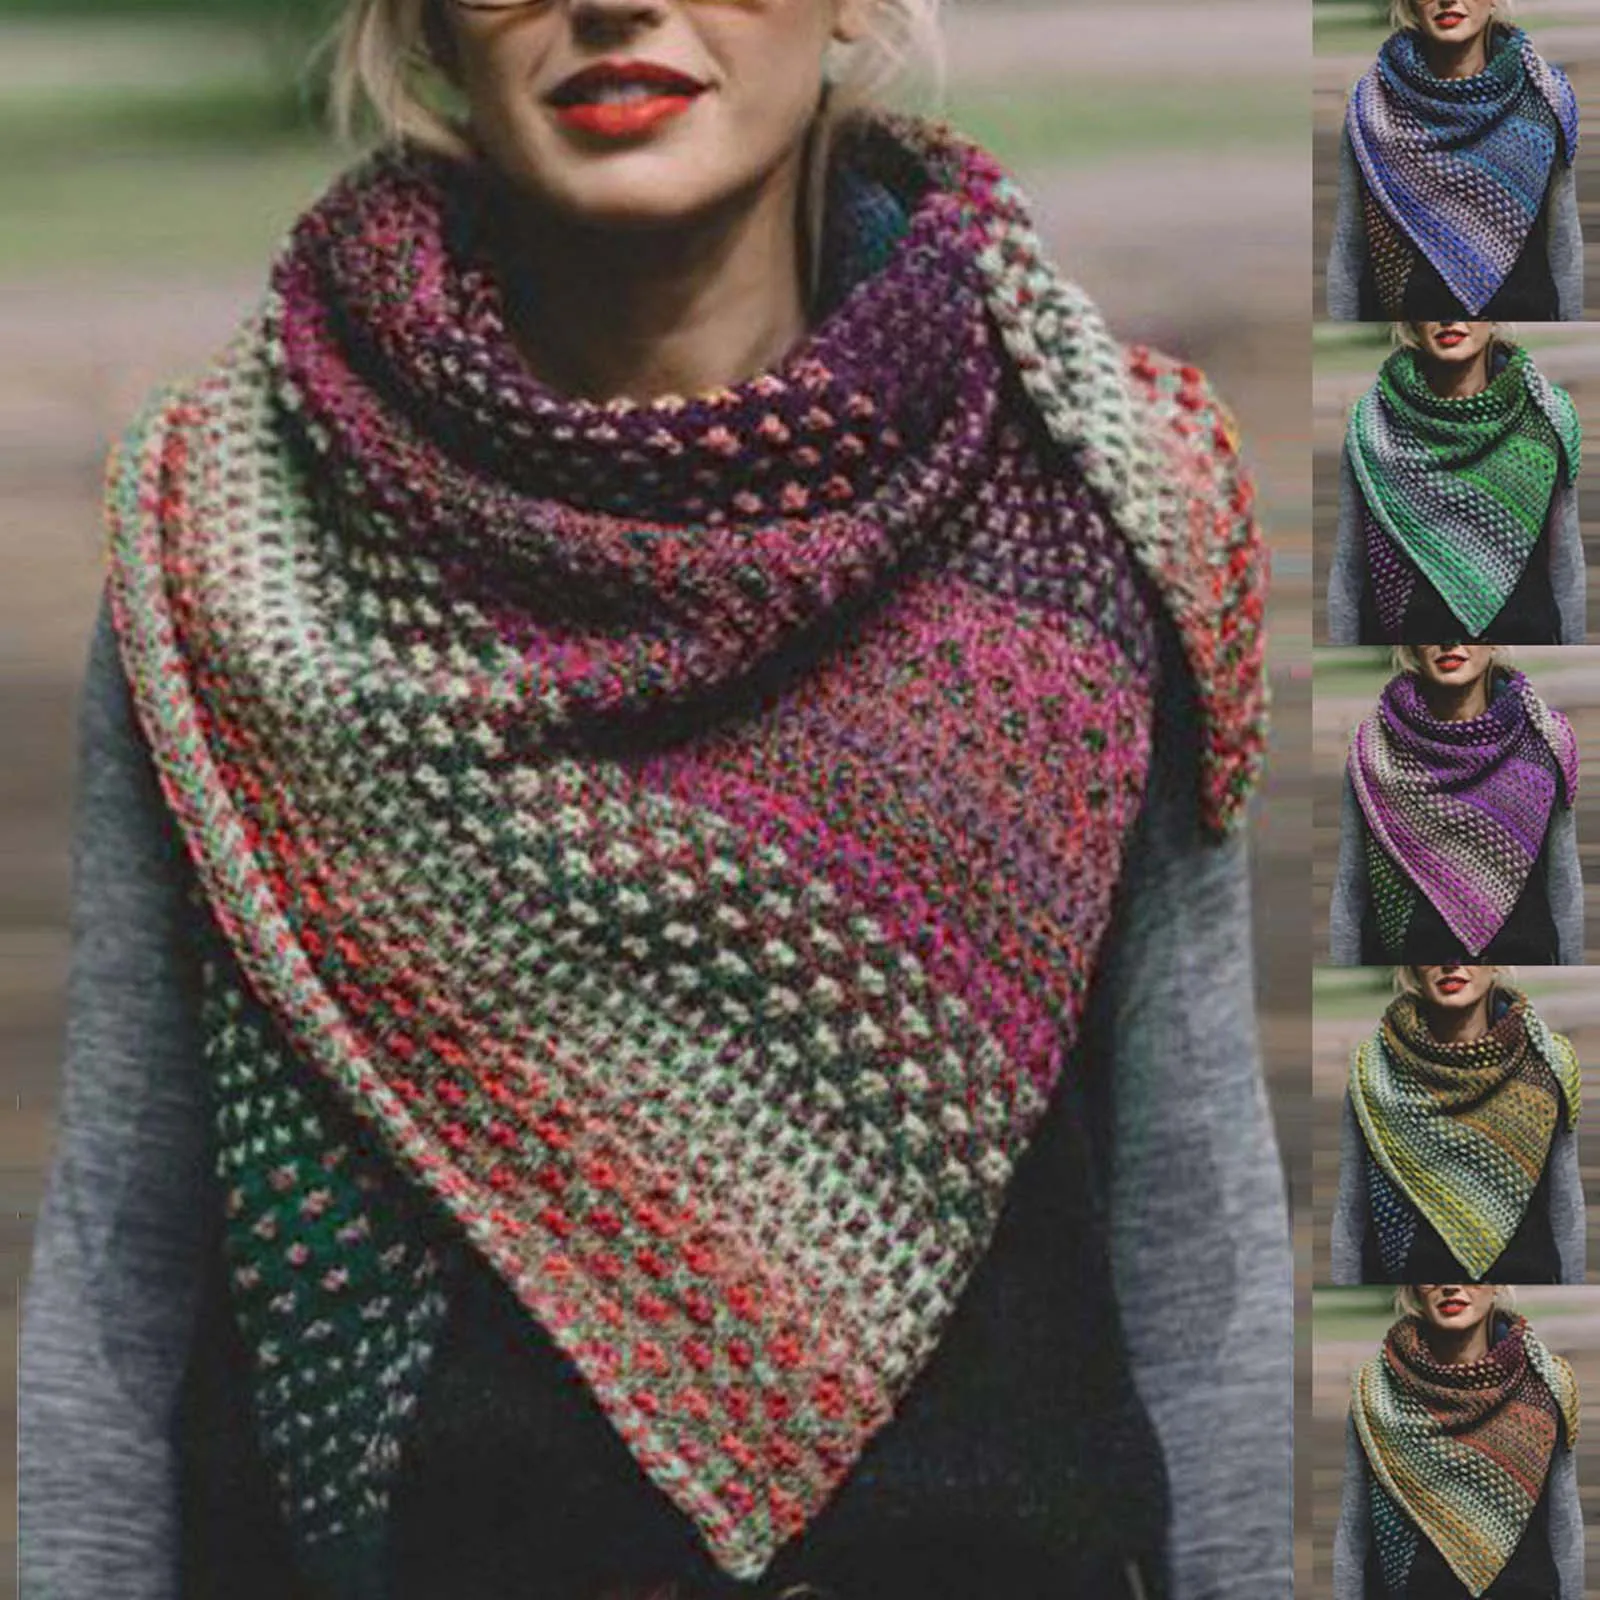 Las mujeres de Invierno Cálido Cara de Color Colorido Crochet Engrosamiento de punto Suave Chal Bufanda Vintage Otoño Plaid Bufanda Larga Chales шарф hiyab 1